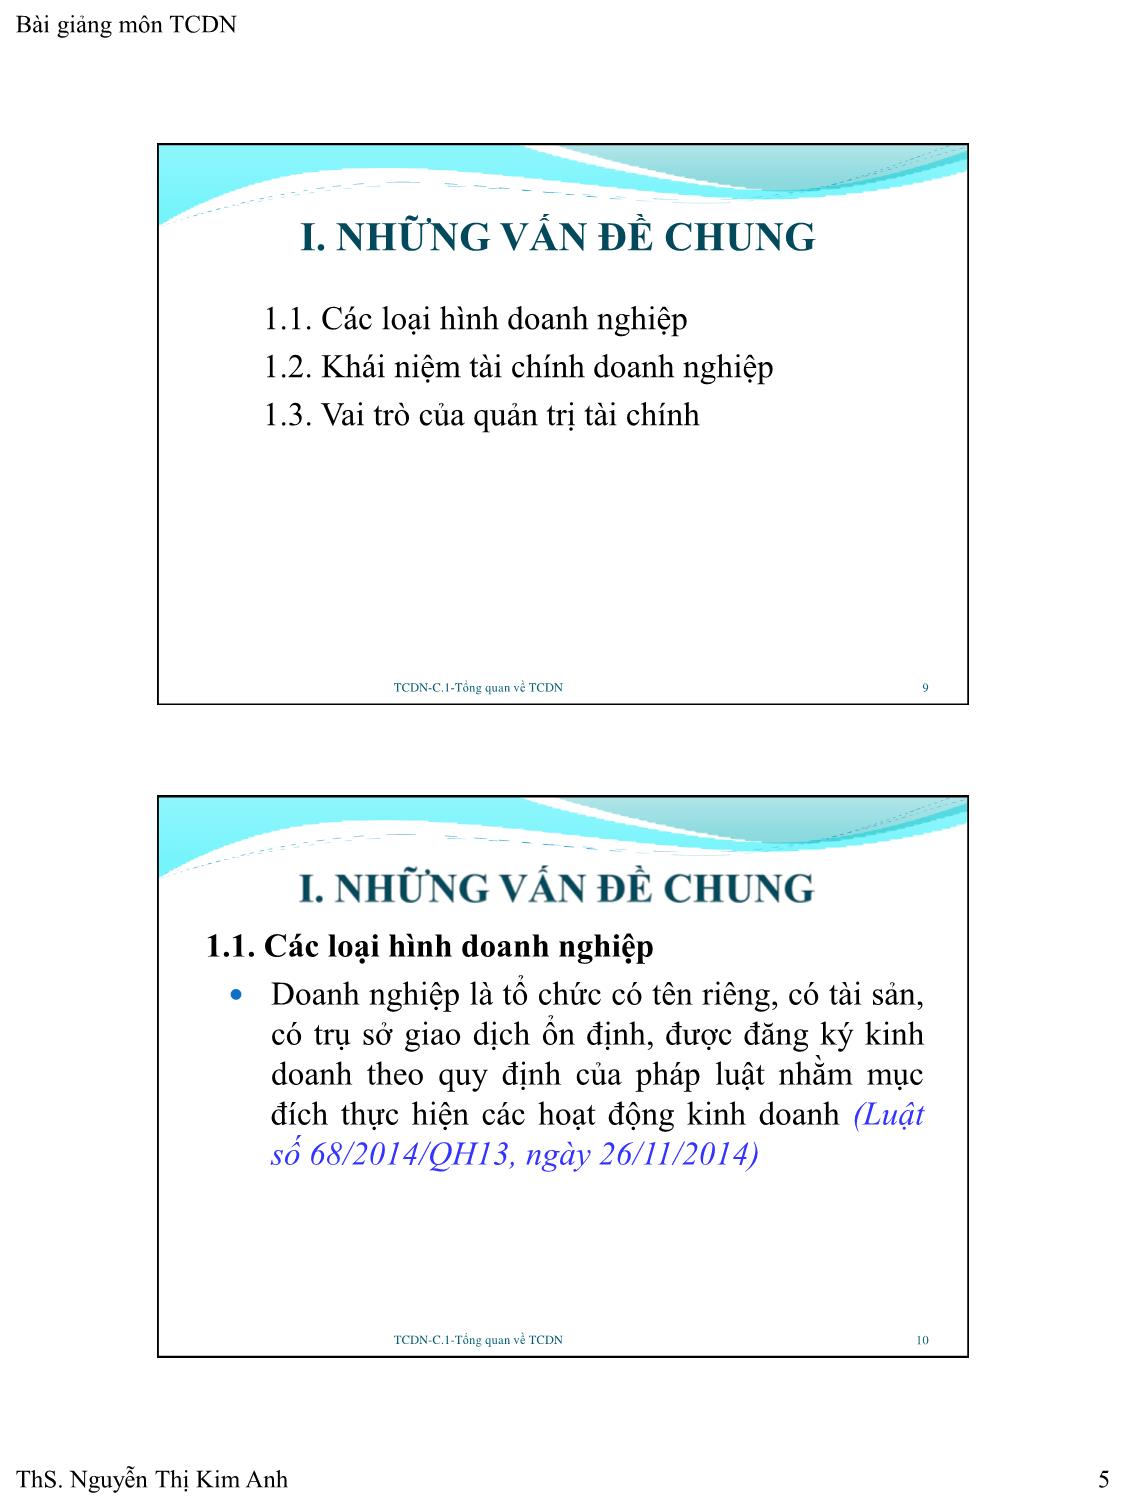 Bài giảng Tài chính doanh nghiệp - Chương 1: Tổng quan về tài chính doanh nghiệp - Nguyễn Thị Kim Anh trang 5